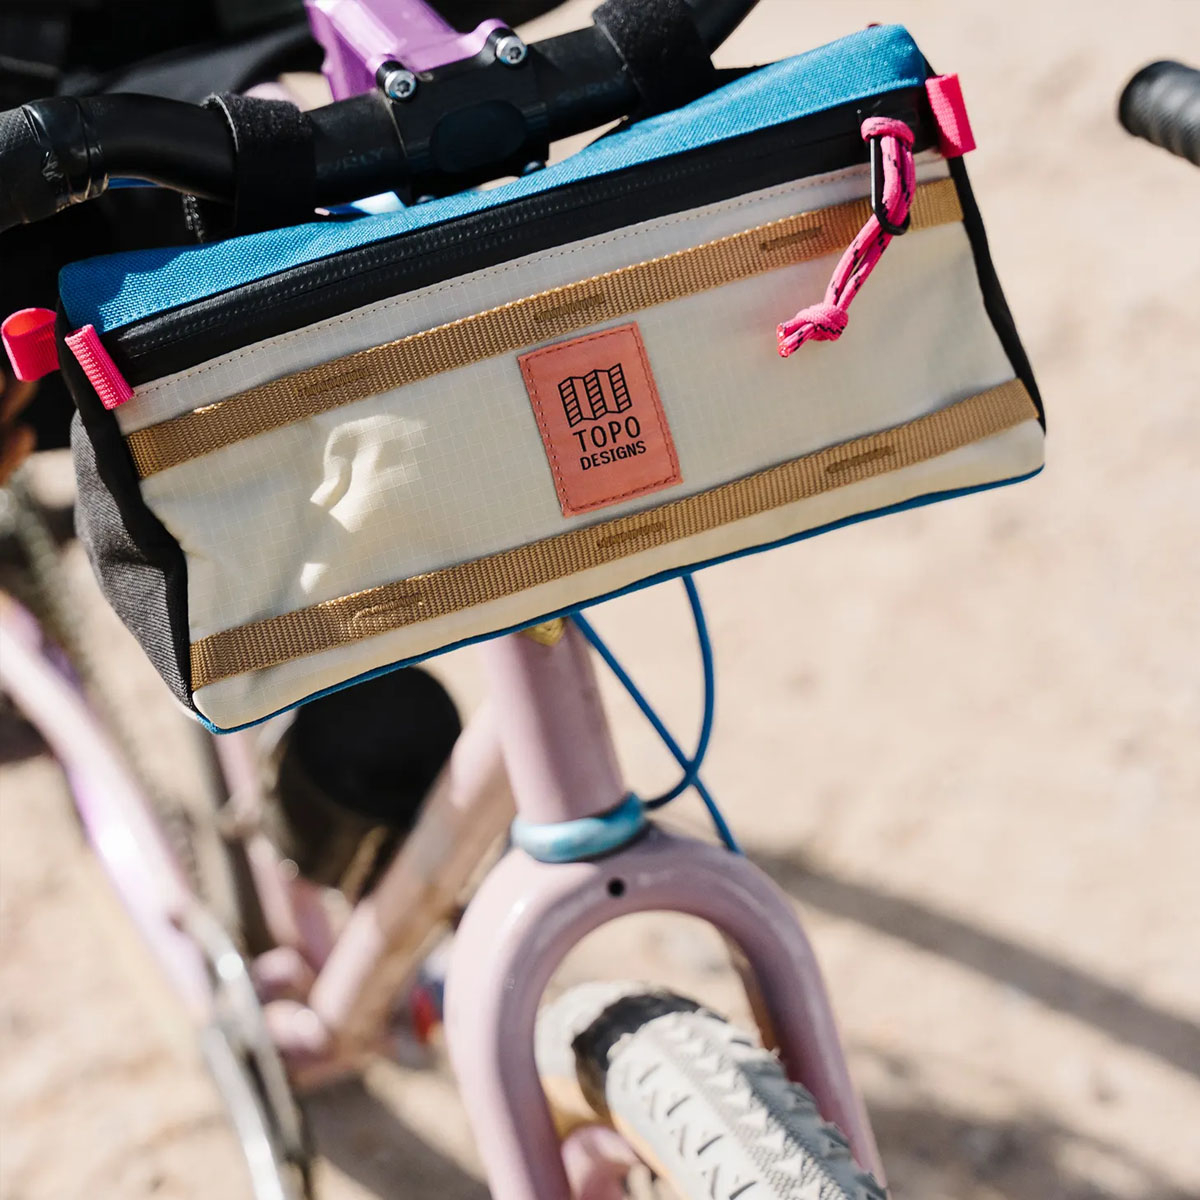 Topo Designs Bike Bag, Vielseitige Tasche zur Befestigung an der vorderen Stange Ihres Fahrrads.